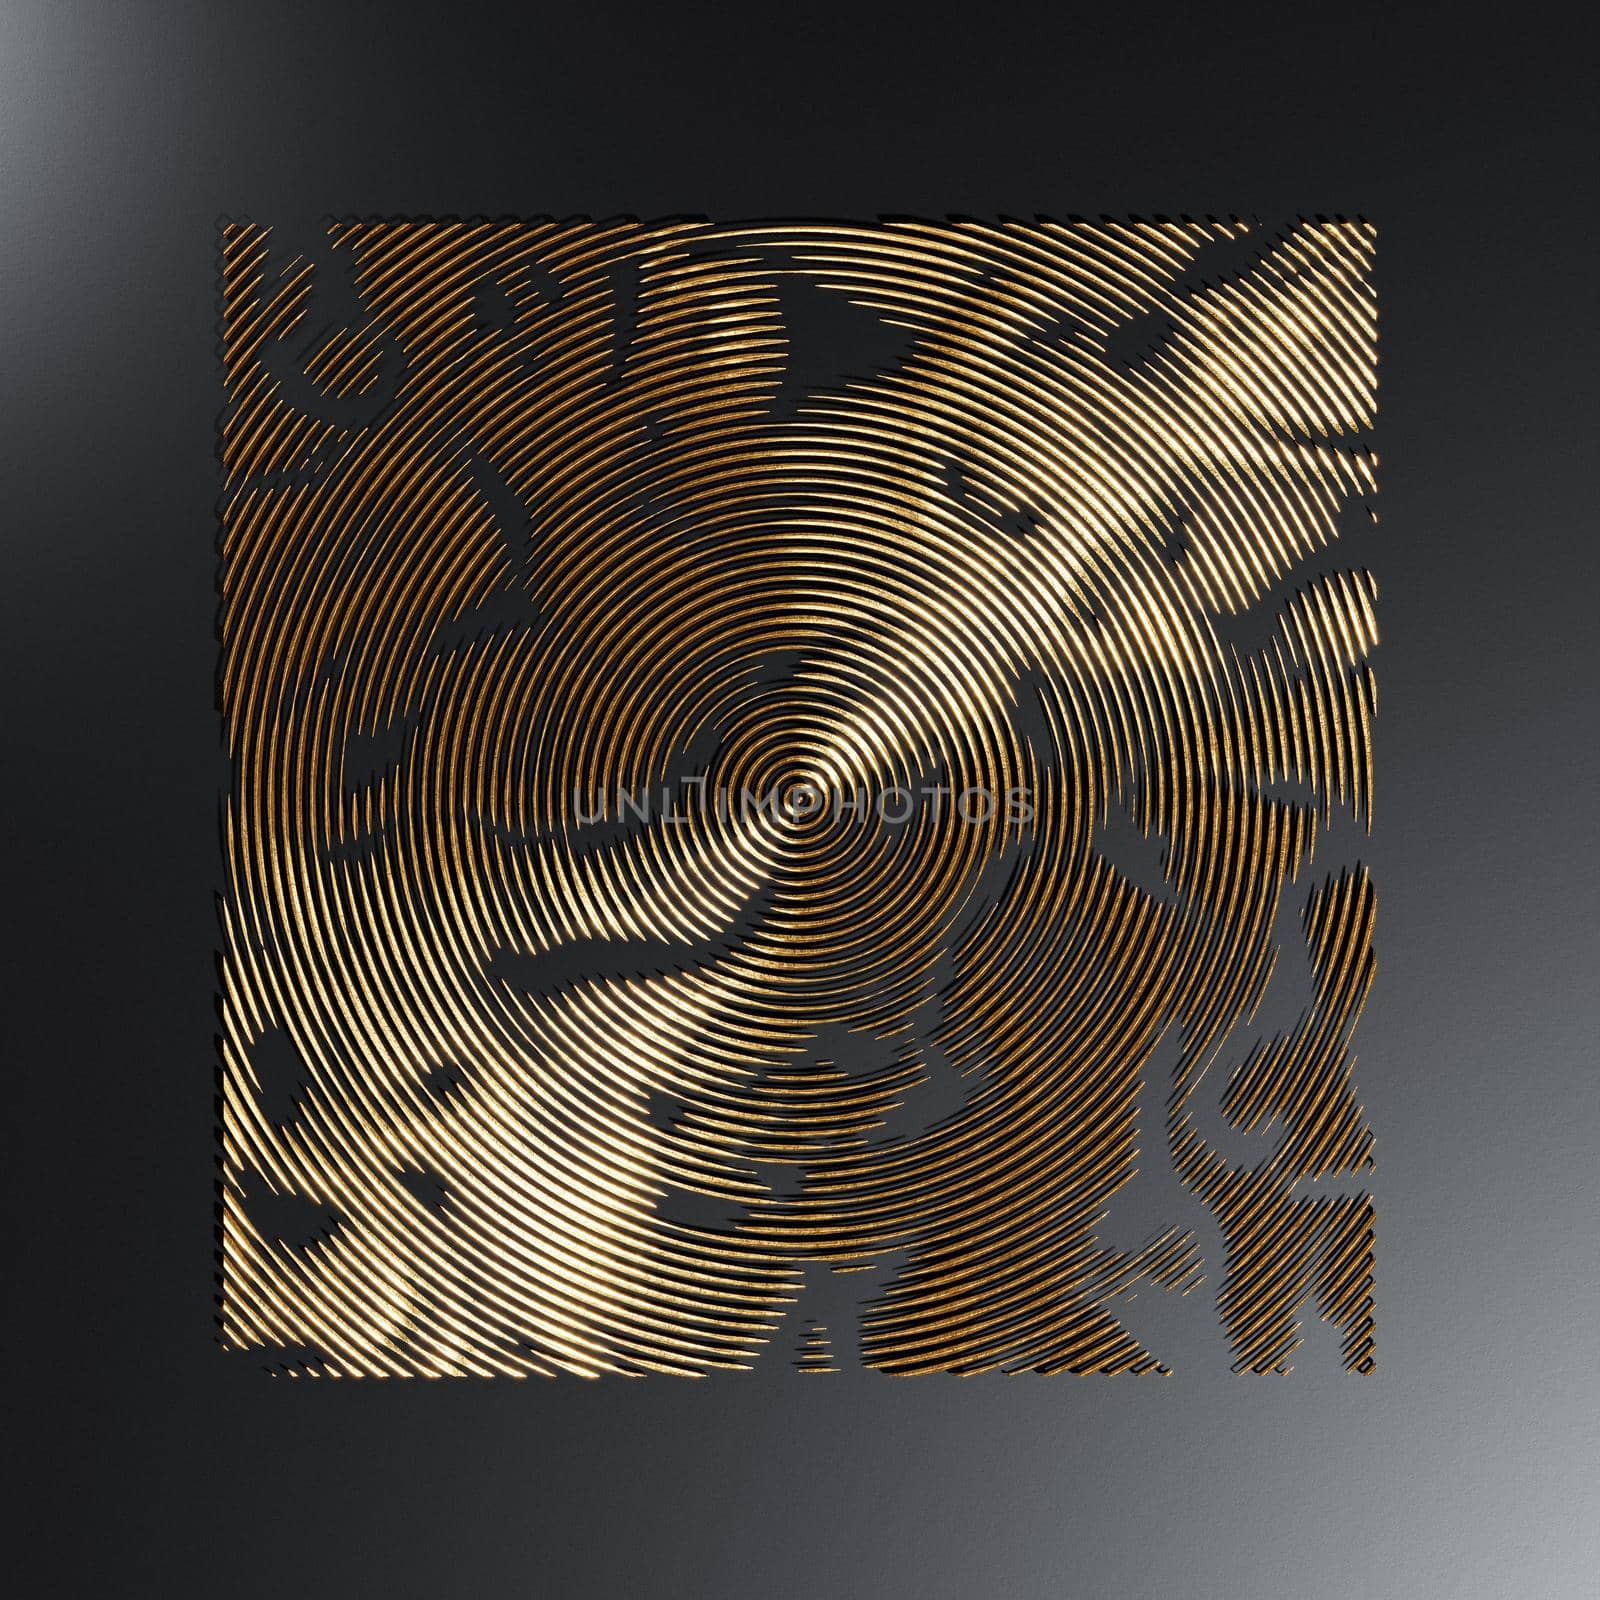 Circular golden metal texture on dark background, 3d rendering